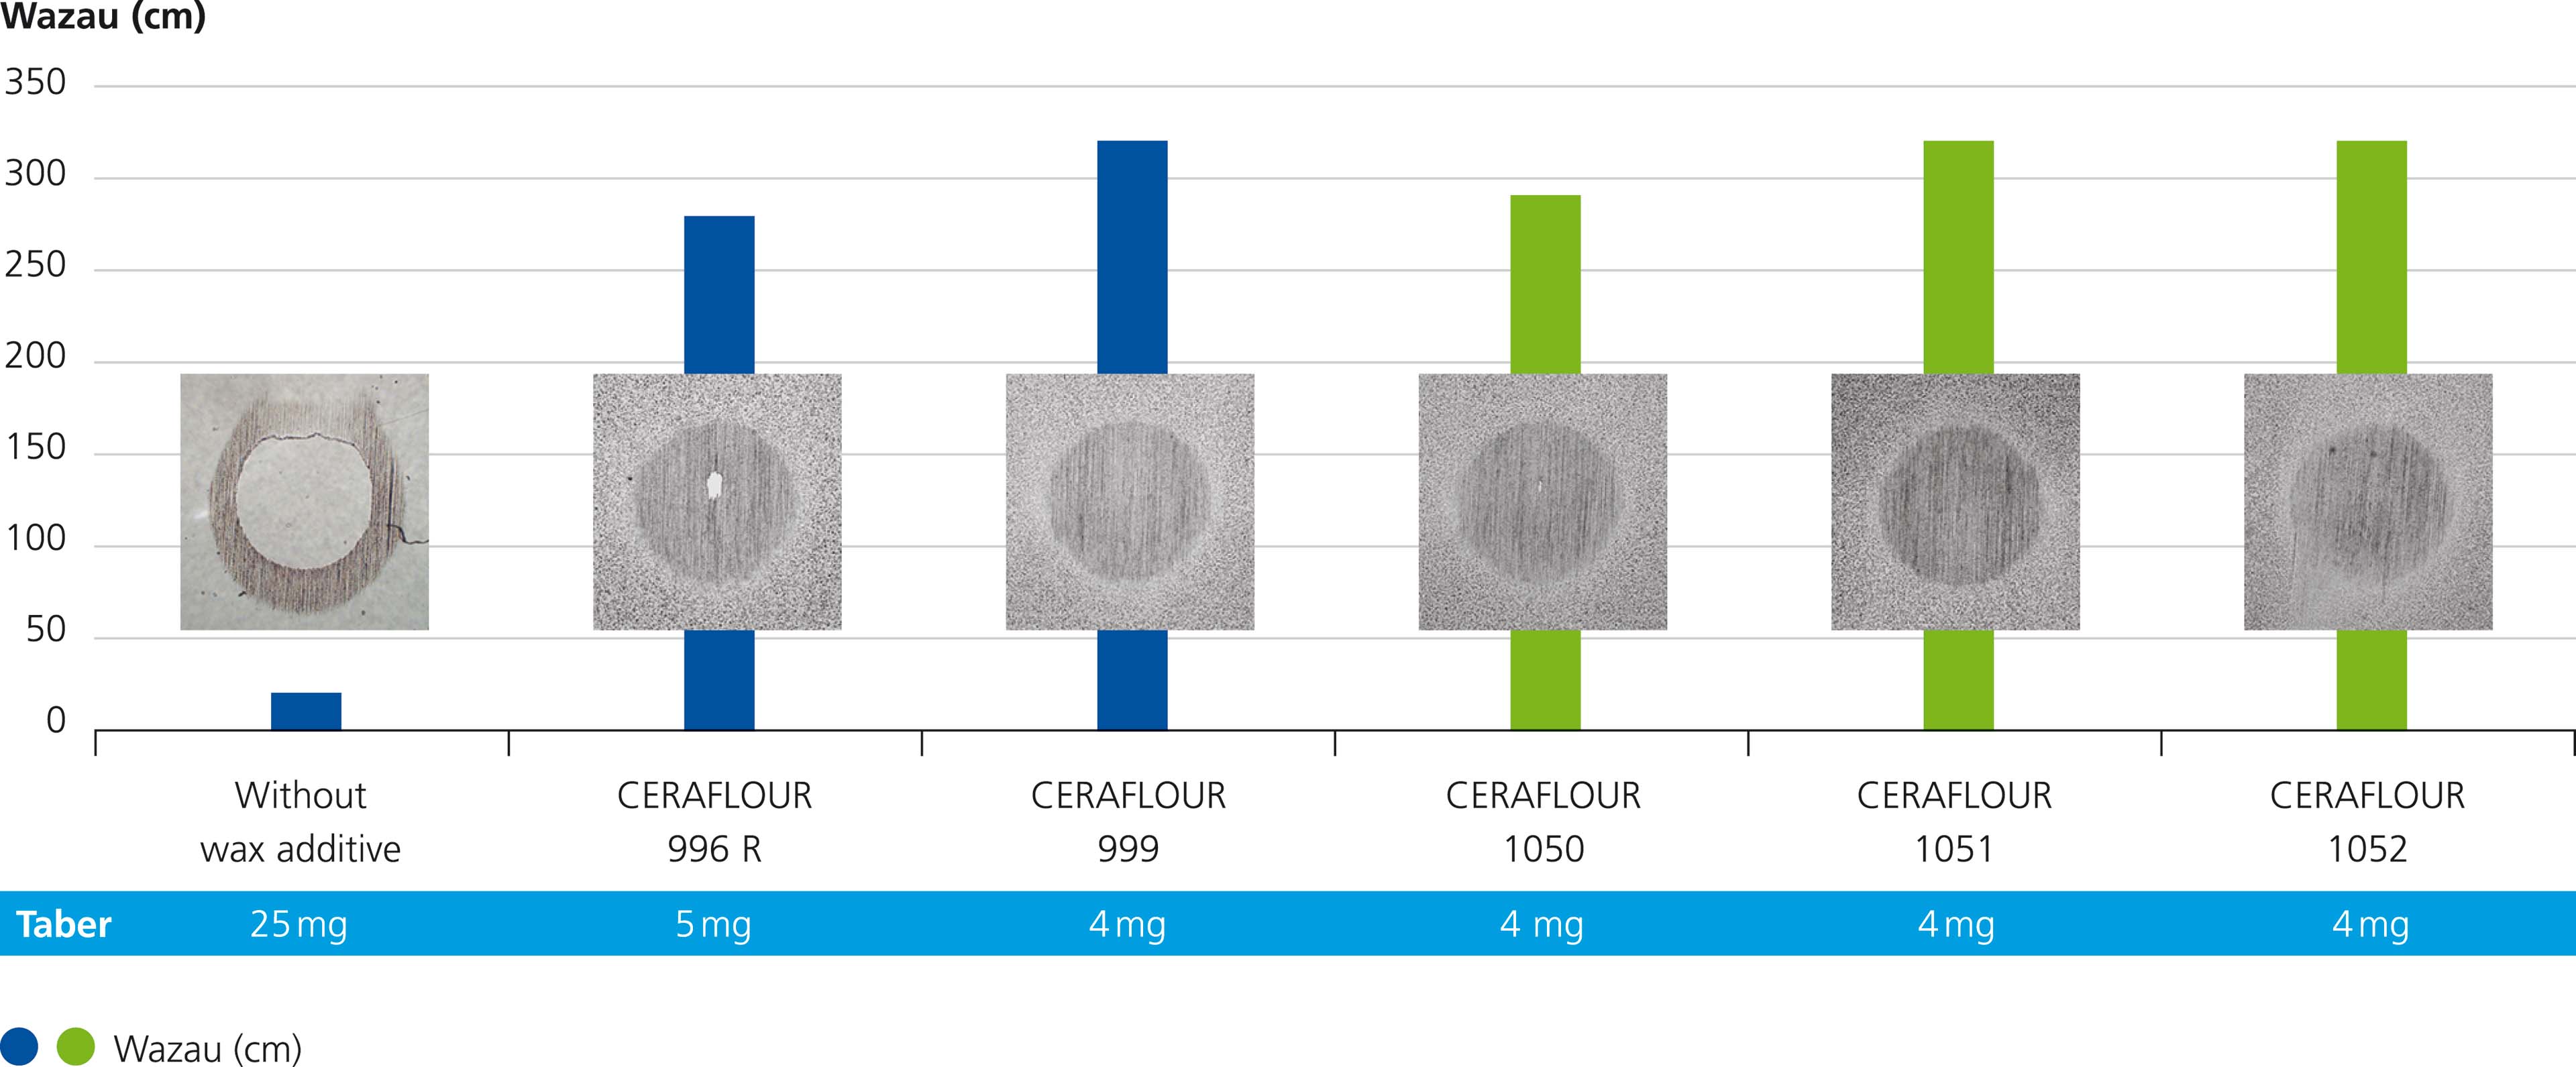 水系の一般工業用塗料におけるテーバー摩耗とWazau摩耗の比較